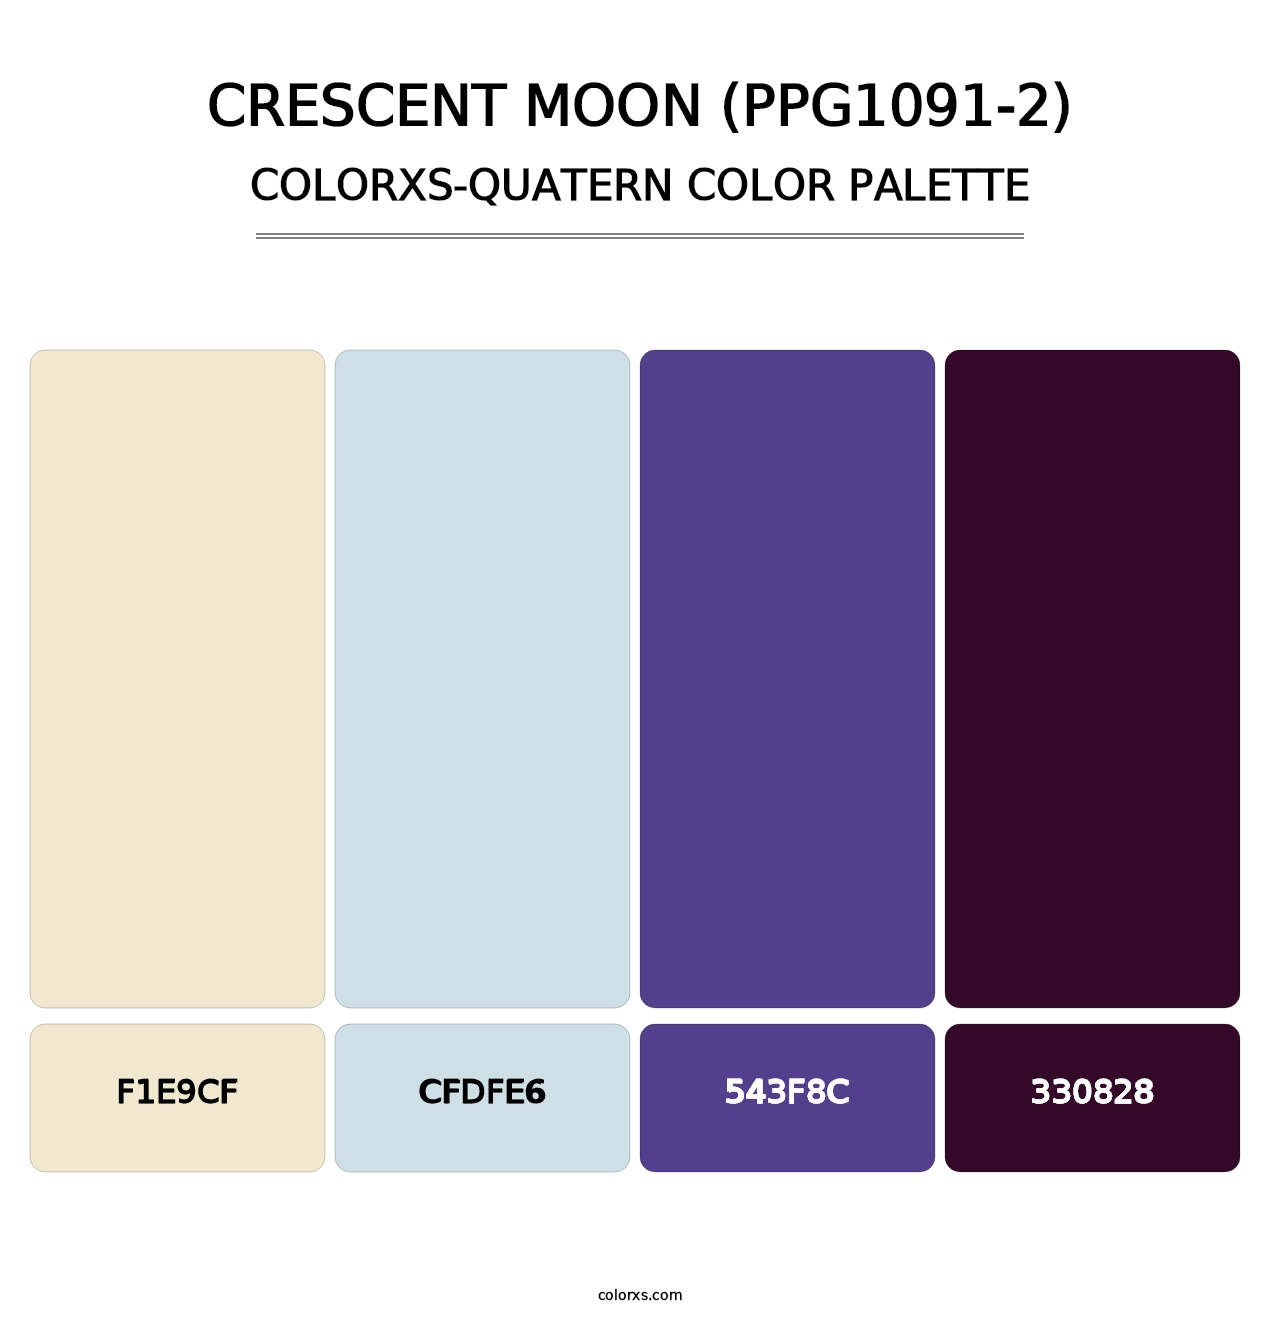 Crescent Moon (PPG1091-2) - Colorxs Quatern Palette